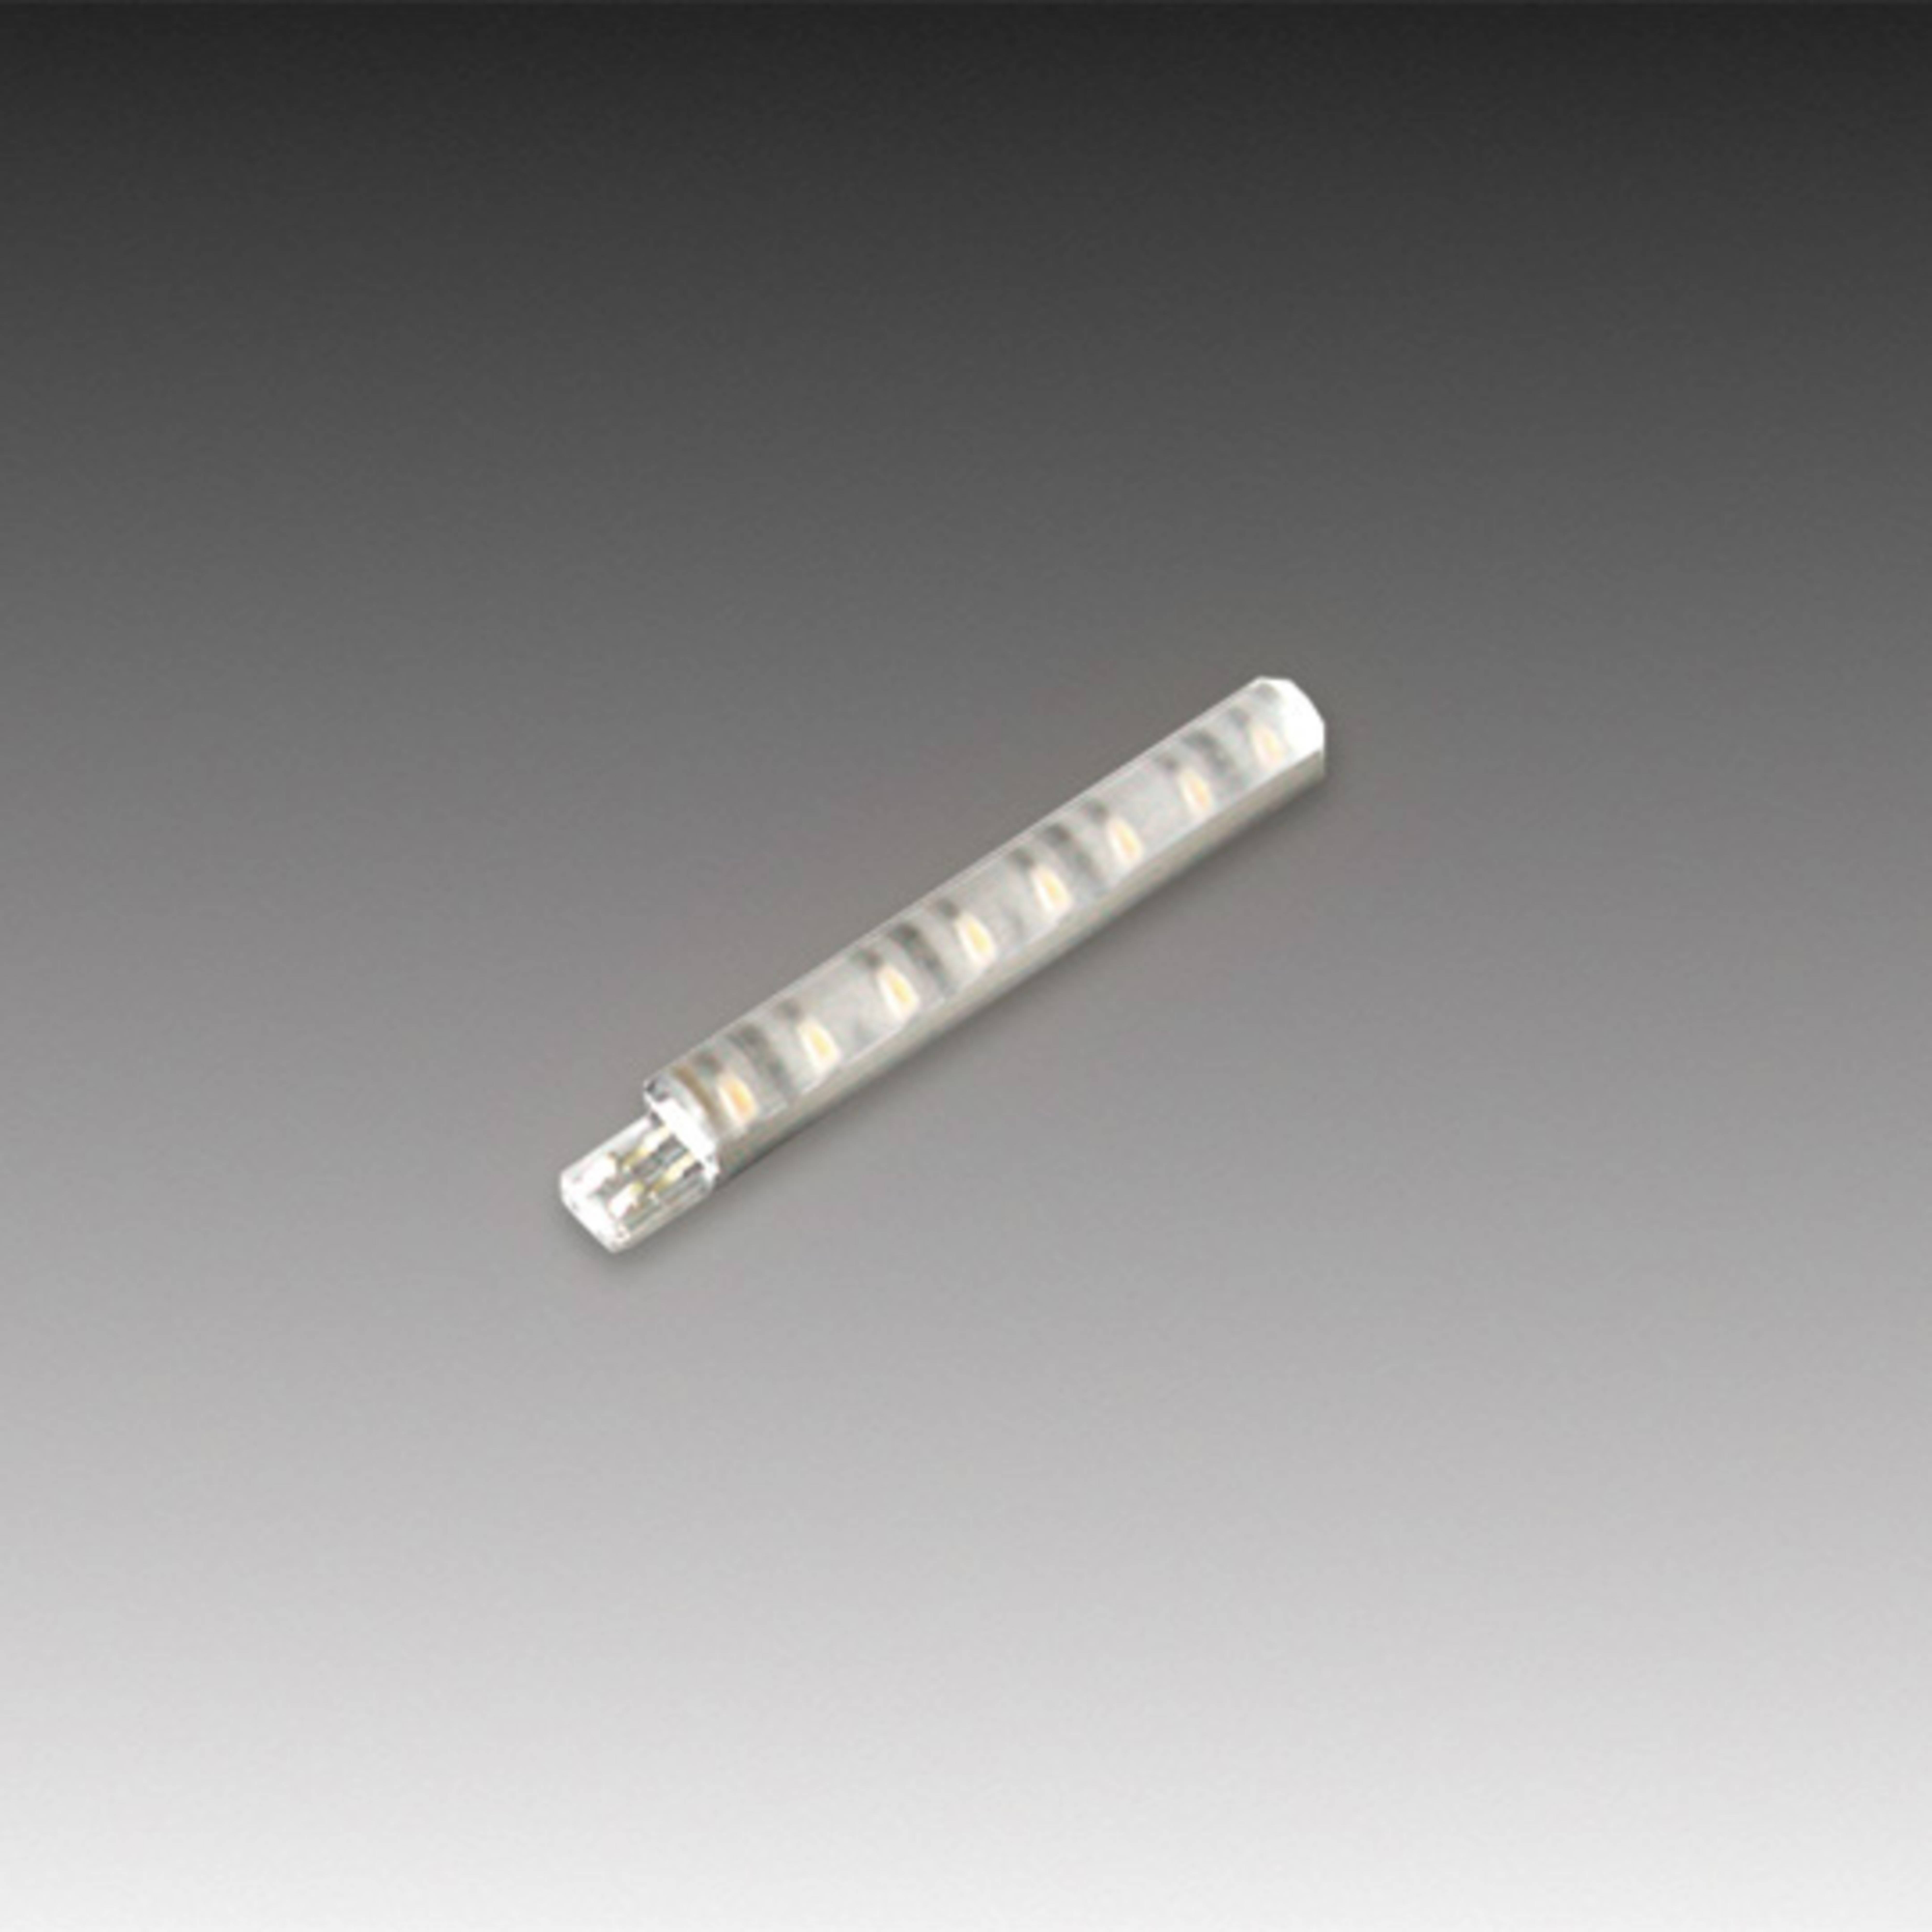 LED Stick 2 barra LED da mobili, 7cm bianco caldo